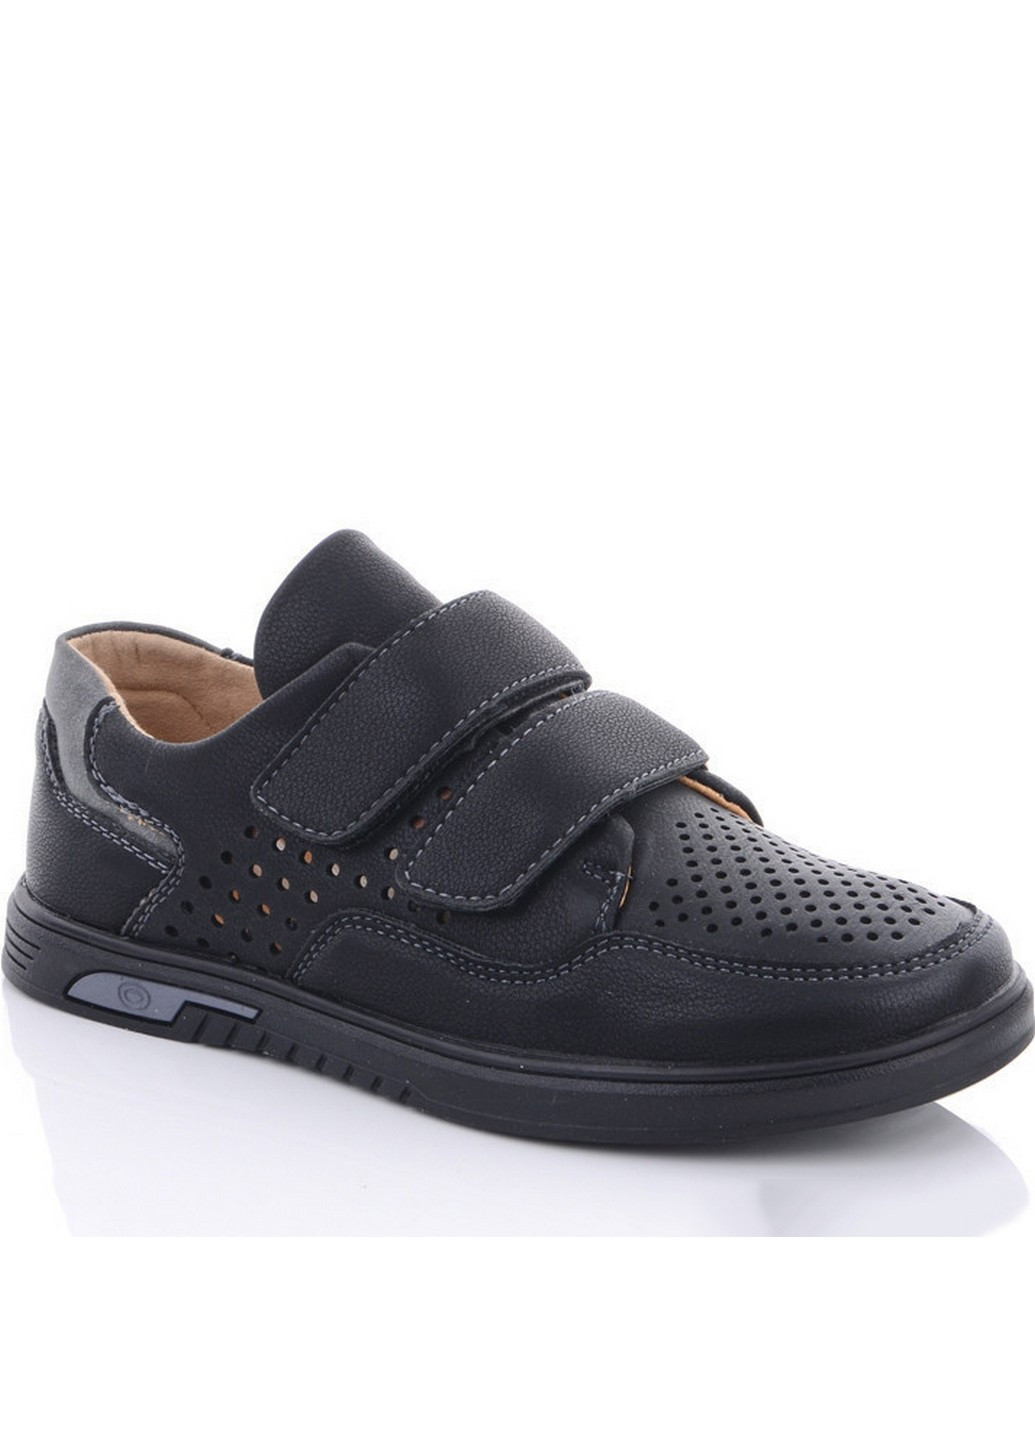 Черные перфорированные туфли m5637-11a 36 черный Jong Golf